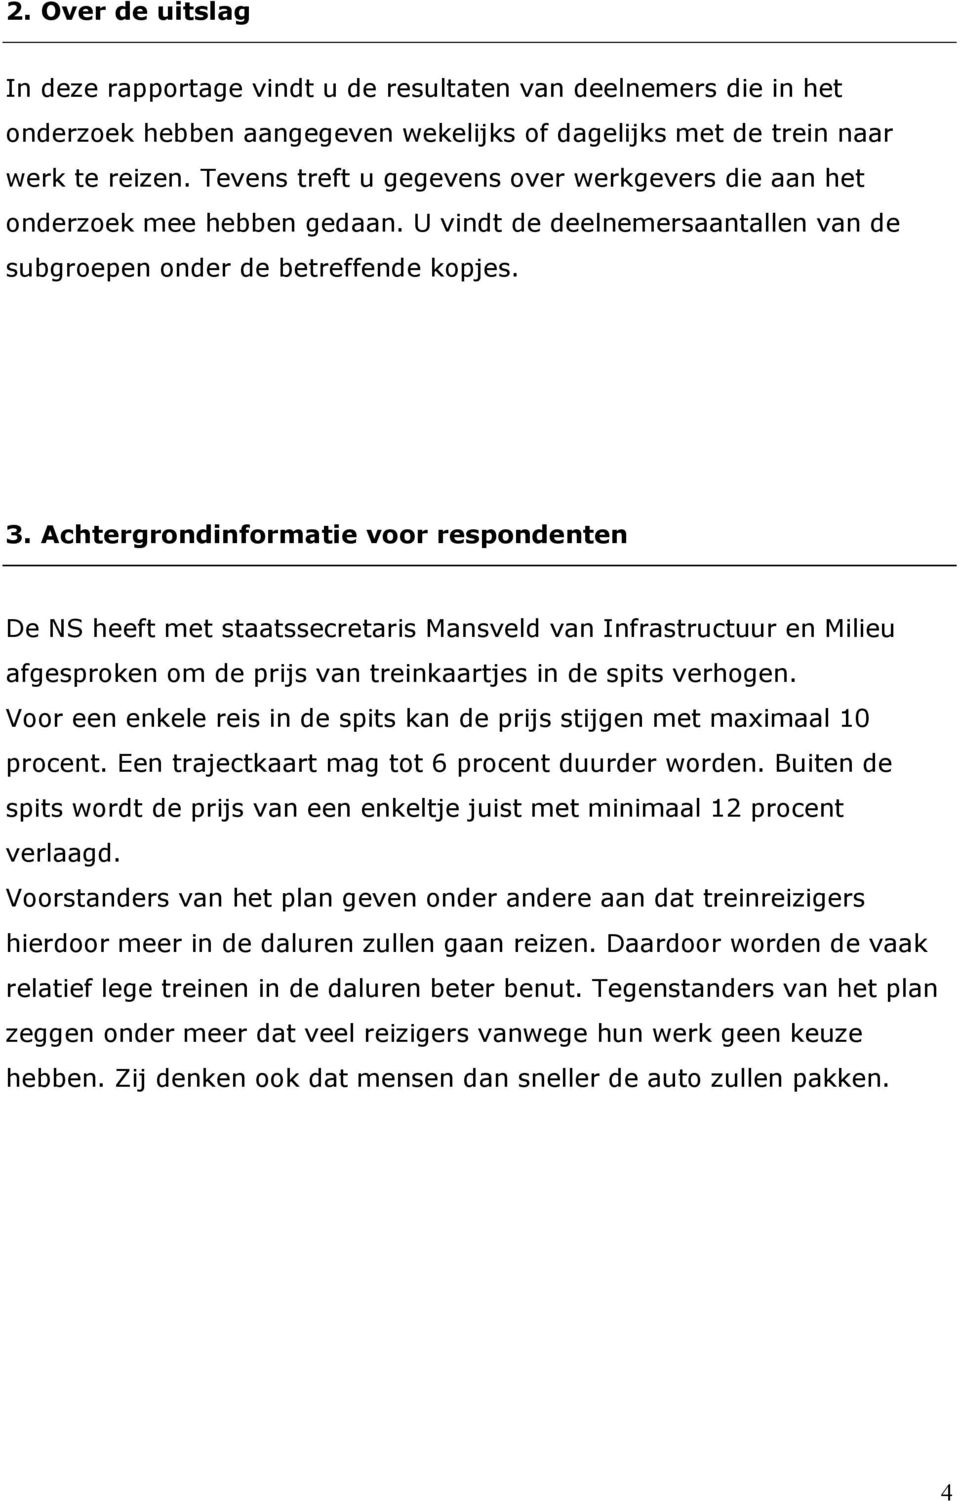 Achtergrondinformatie voor respondenten De NS heeft met staatssecretaris Mansveld van Infrastructuur en Milieu afgesproken om de prijs van treinkaartjes in de spits verhogen.